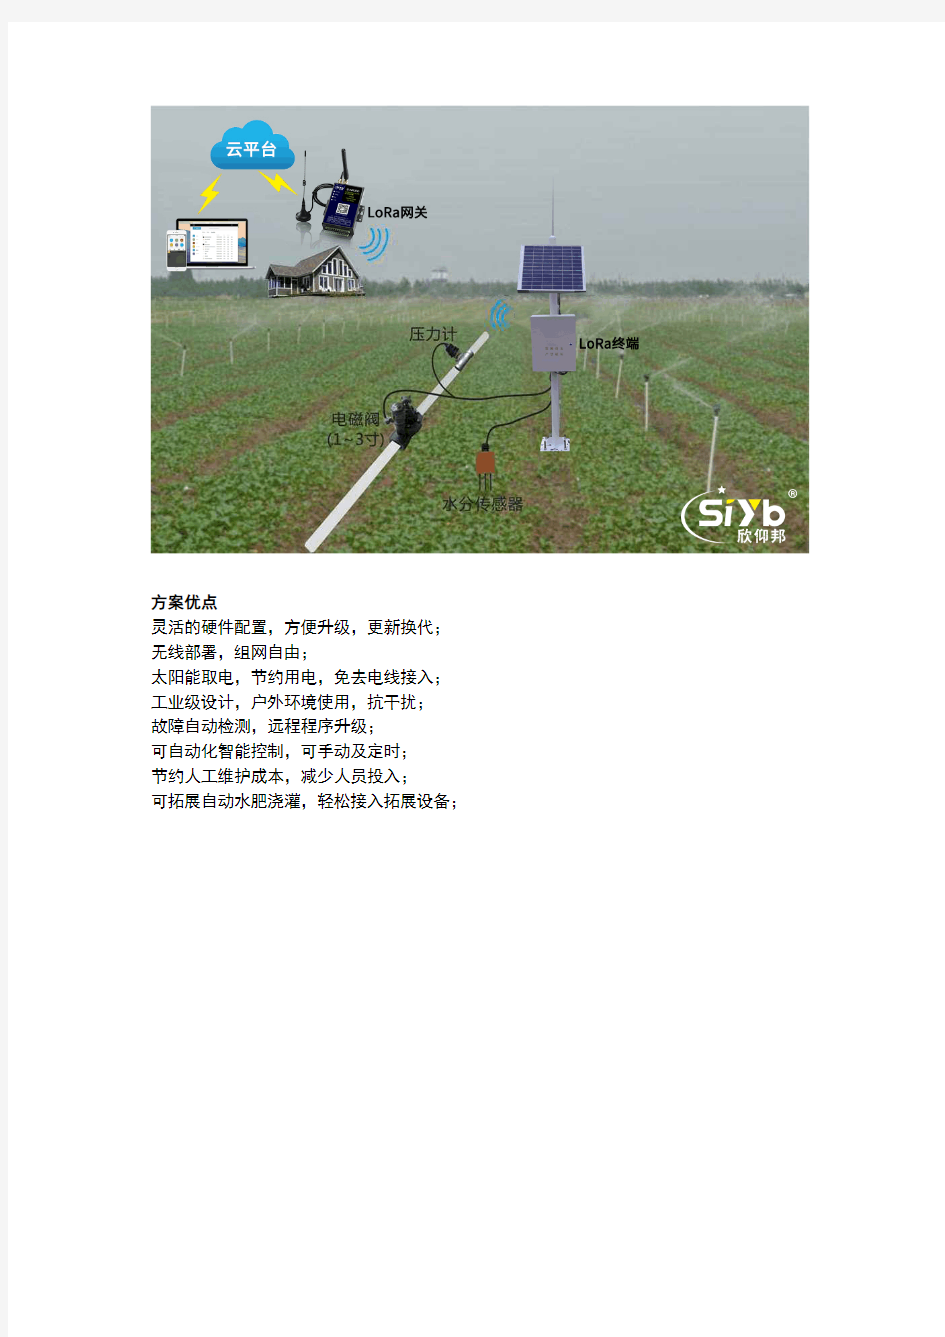 自动化智能灌溉一体化系统